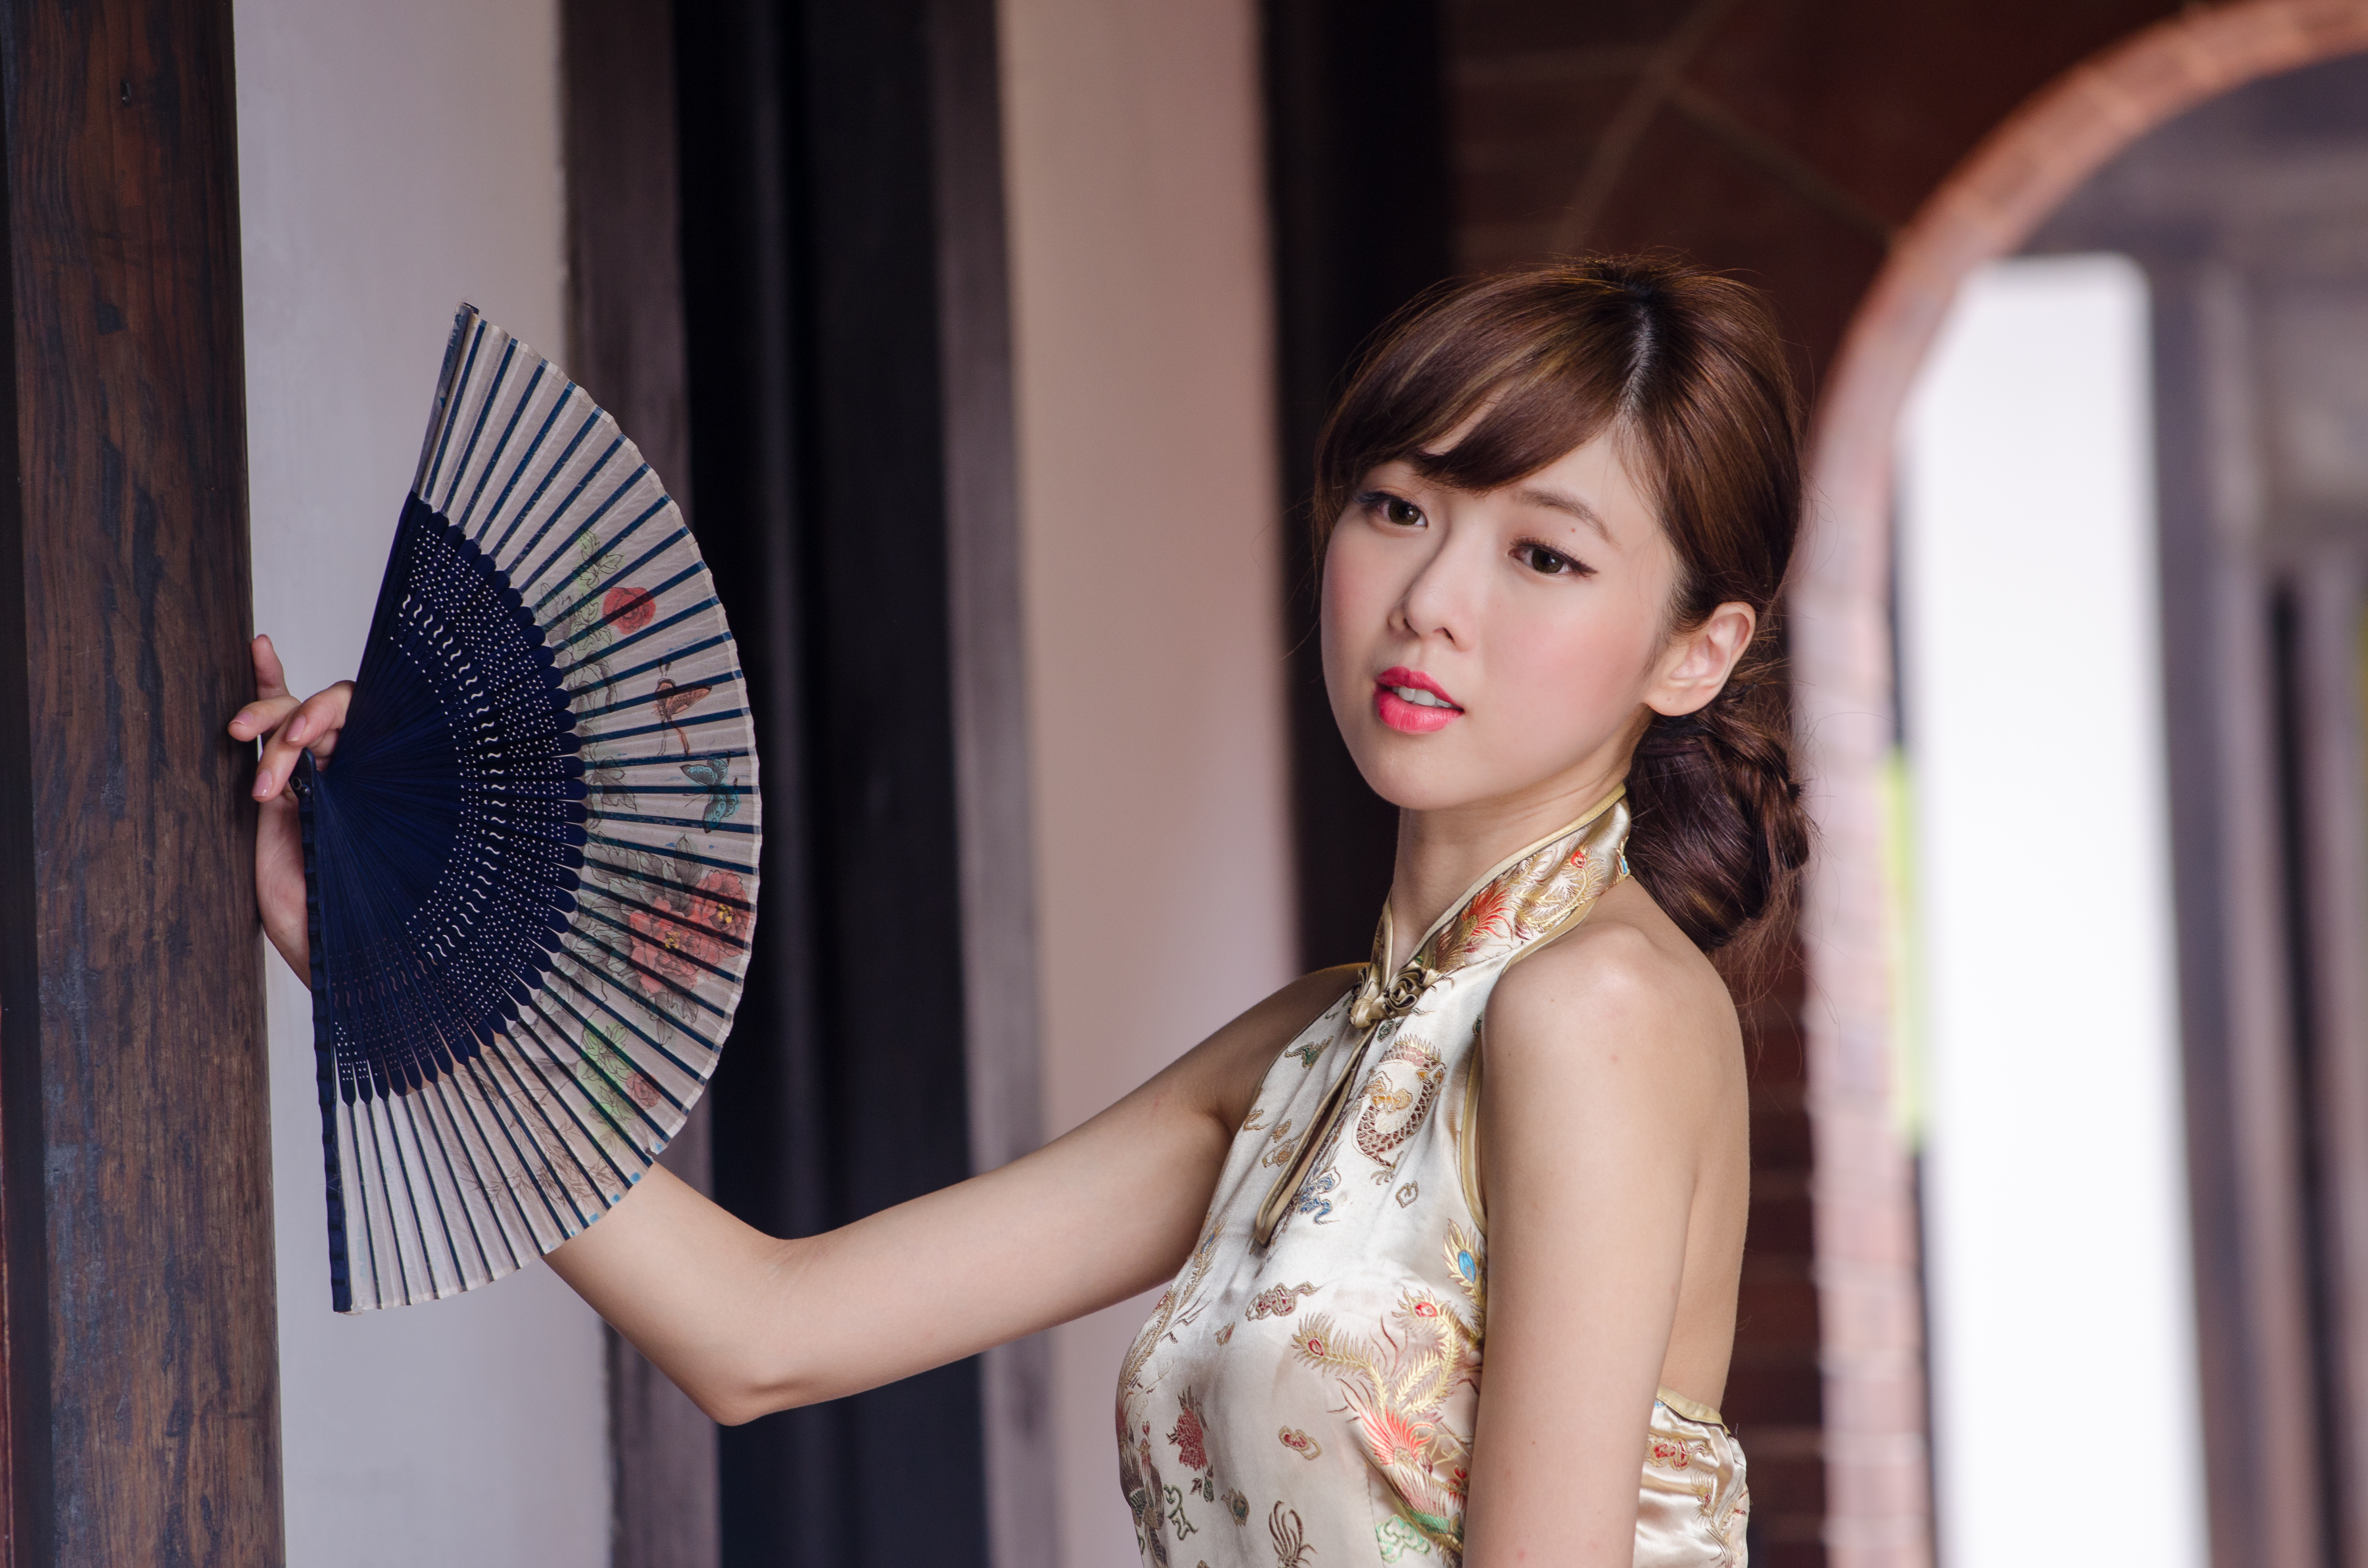 women, chén qiáoqiáo, asian, fan, model, taiwanese download HD wallpaper